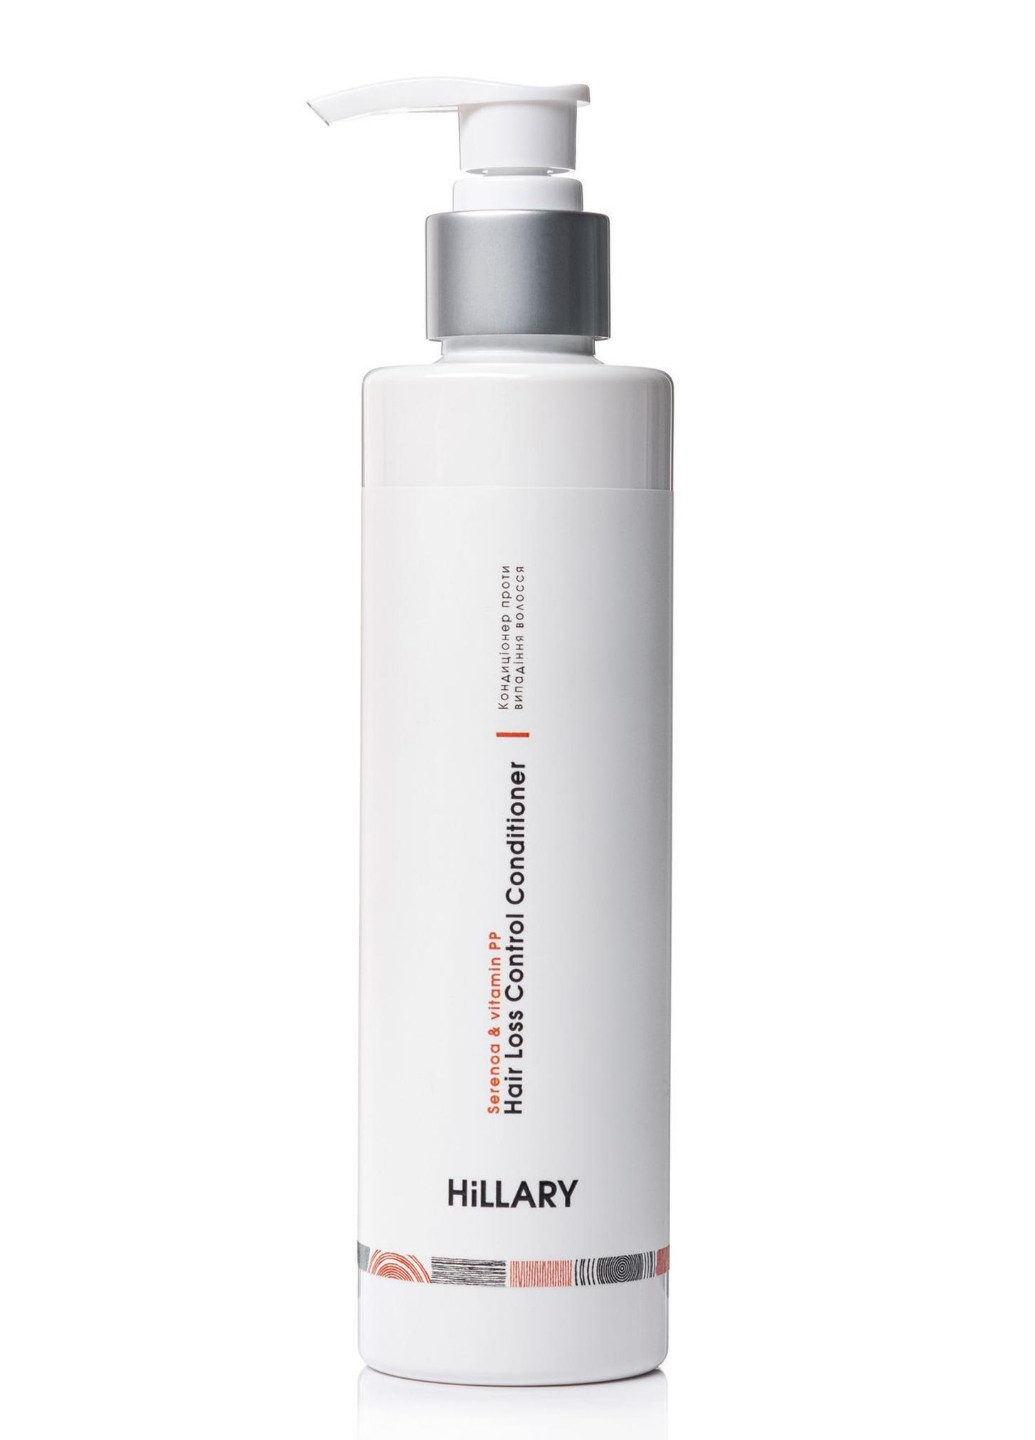 Шампунь та сироватка для волосся Concentrate Serenoa + кондиціонер проти випадіння волосся Hillary (256527882)